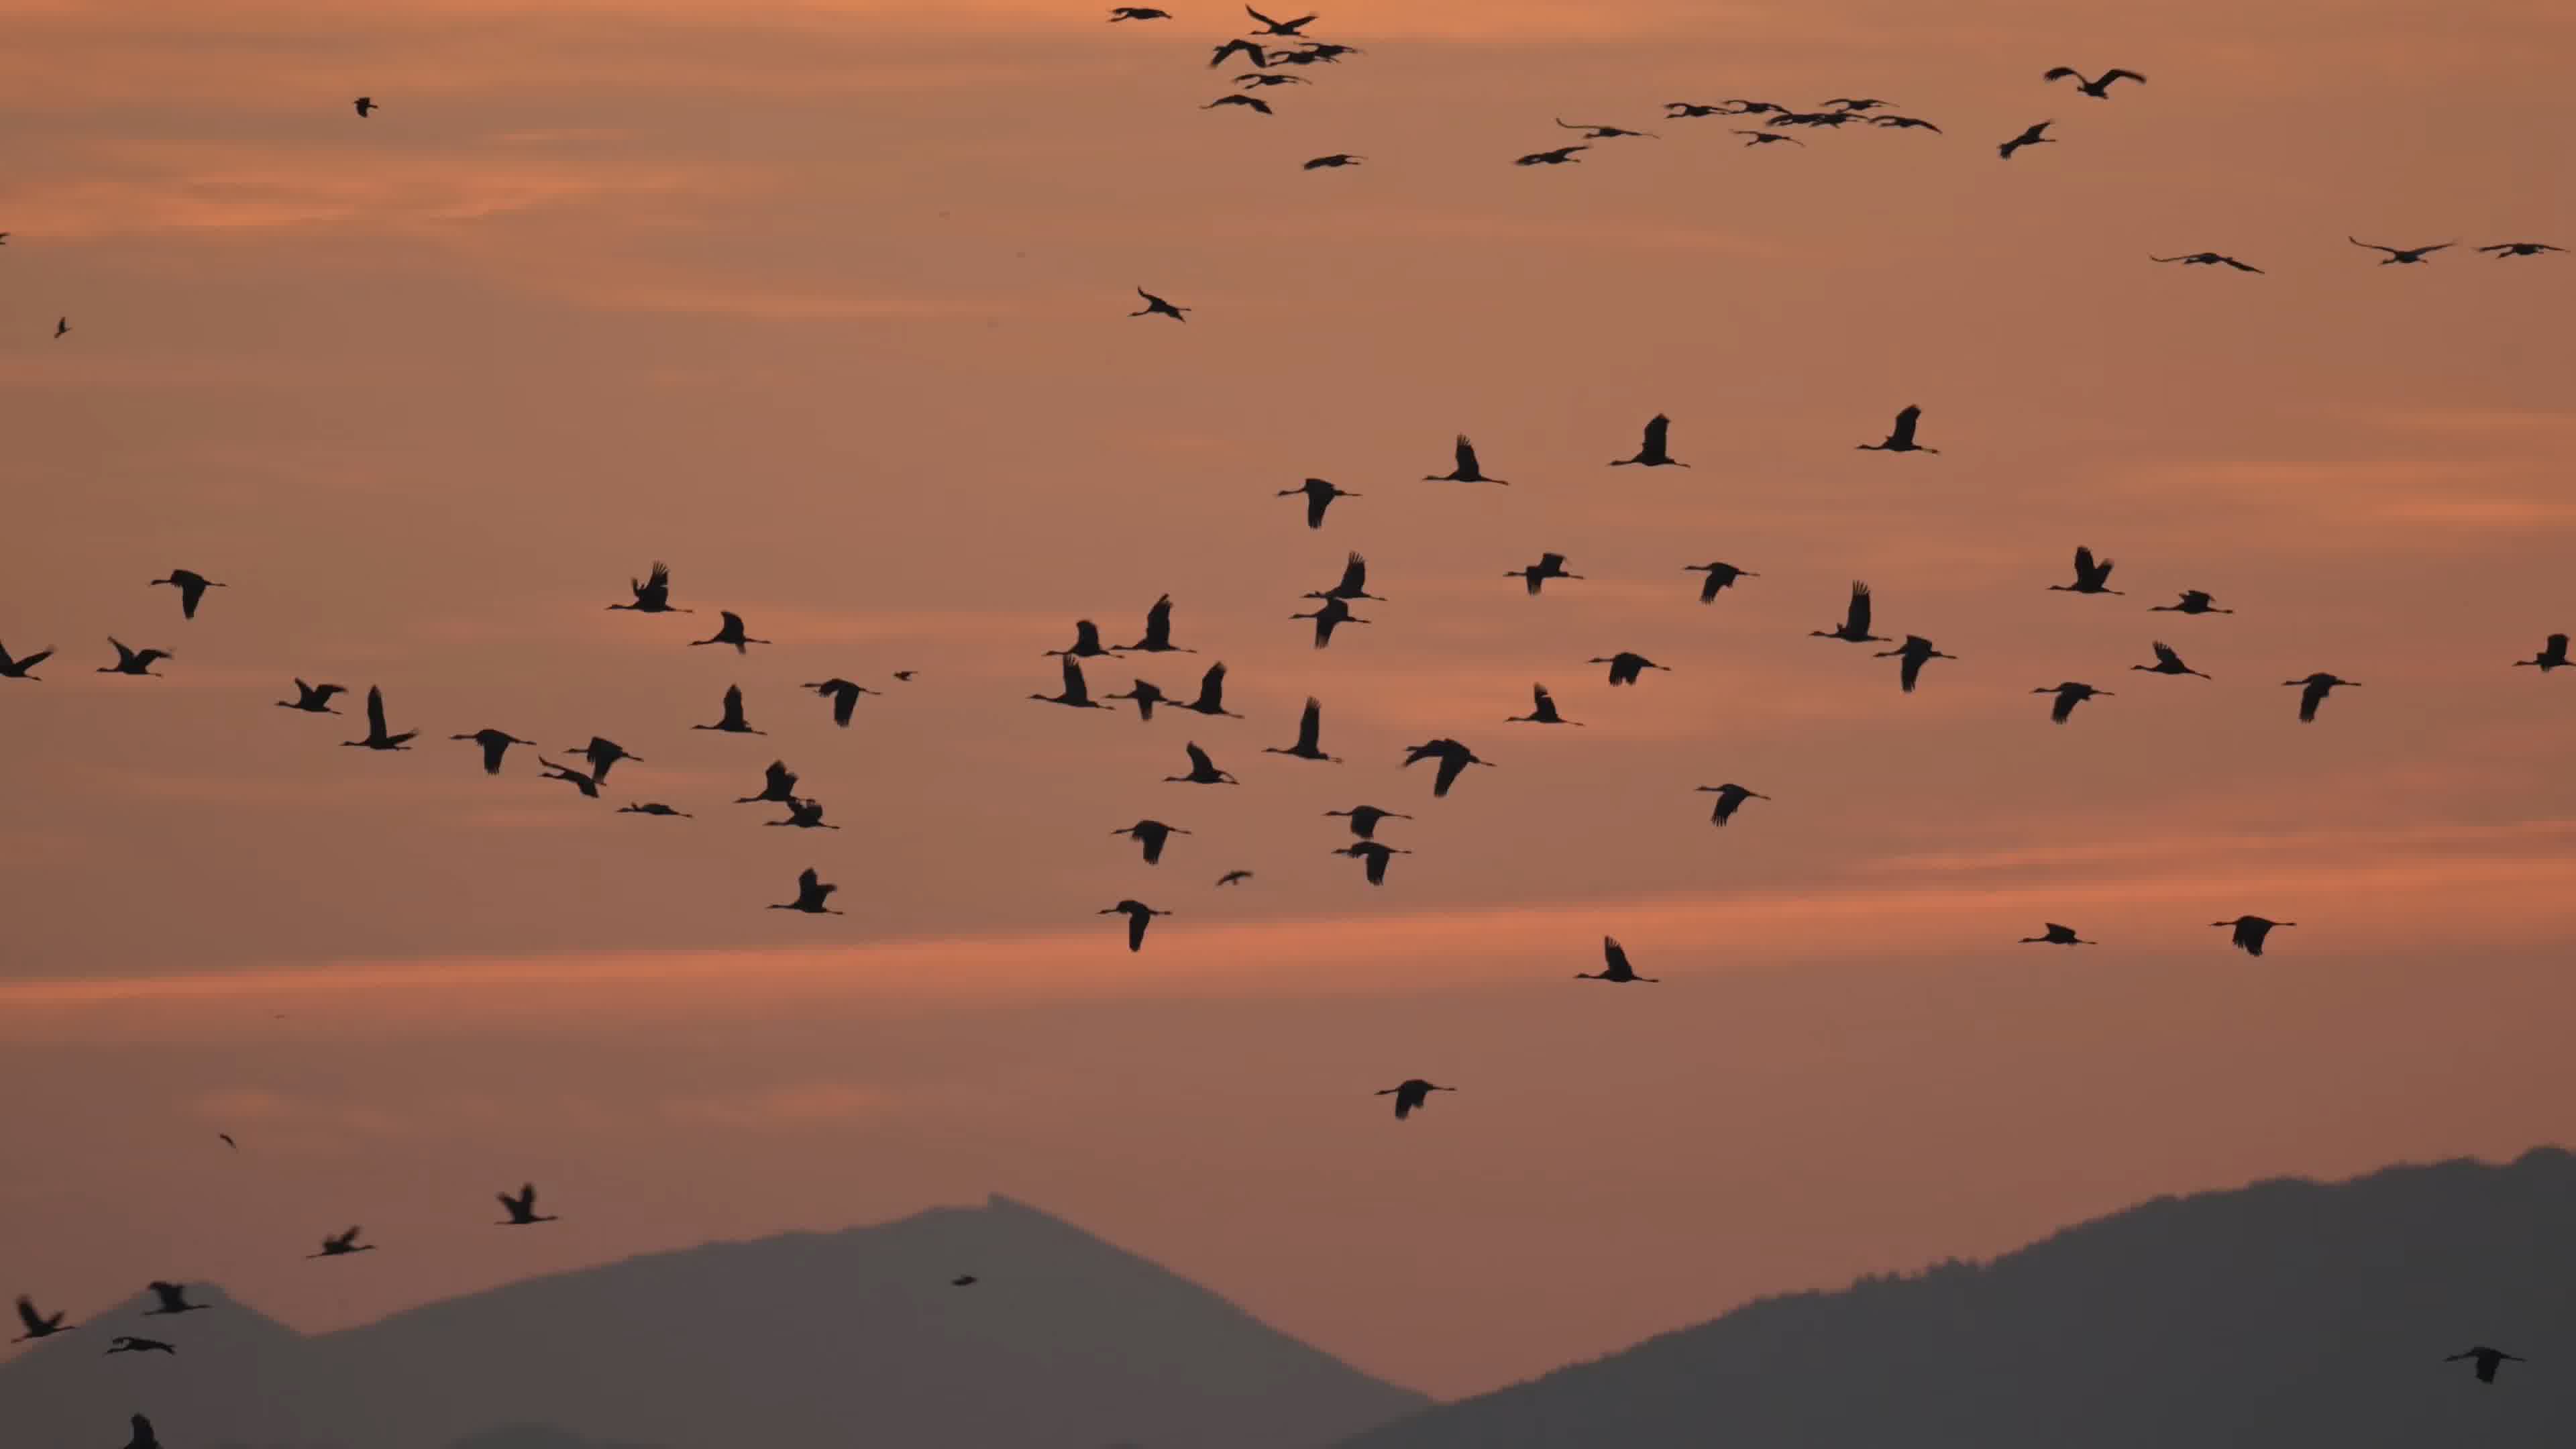 鸟 野生动物 日落 - Pixabay上的免费照片 - Pixabay